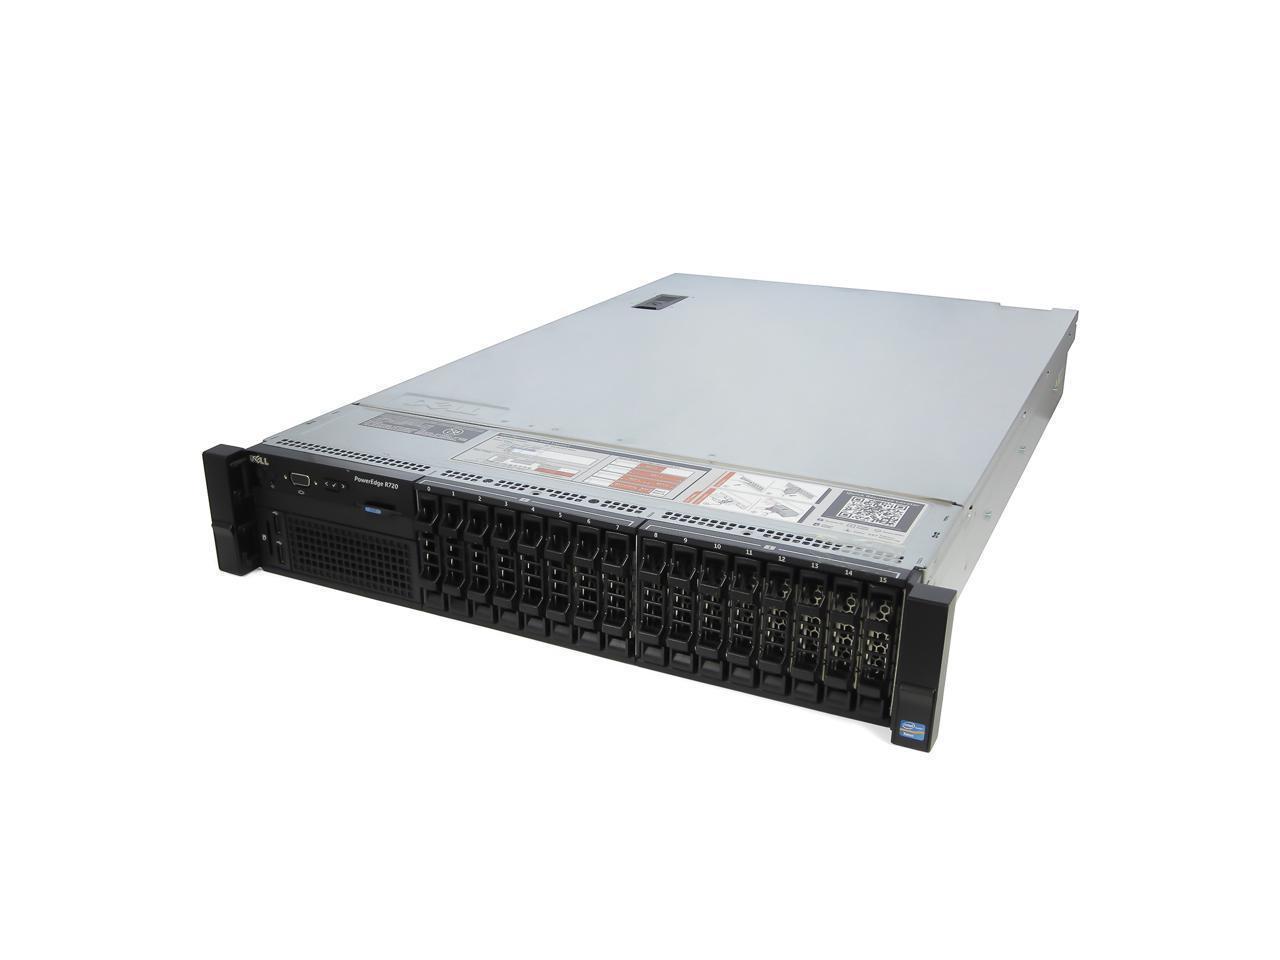 RAM Mounts DELL POWEREDGE R720 2 x INTEL XEON E5-2650 V2 128GB RAM 8x 1TB 7.2K SAS H710P 